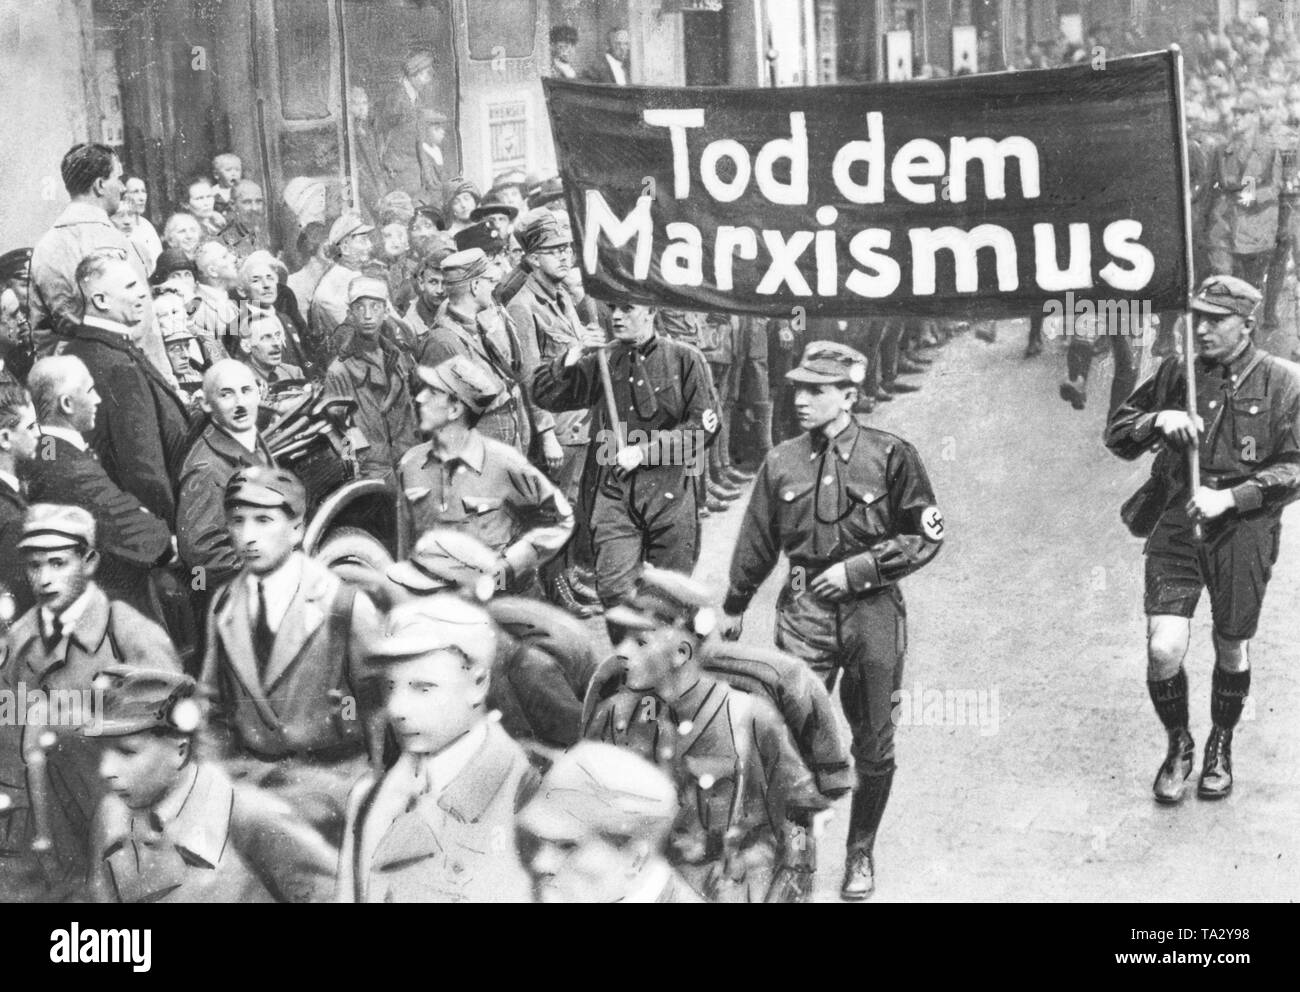 Adolf Hitler (links stehend im Hellen dustcoat) am März Vergangenheit der SA während der Parteitag der NSDAP in Weimar. Unter ihm auf der rechten Seite ist der Herausgeber der "tuermer" Julius Streicher. Zwei SA-Männer halten ein Transparent mit der Aufschrift "Tod des Marxismus". Stockfoto